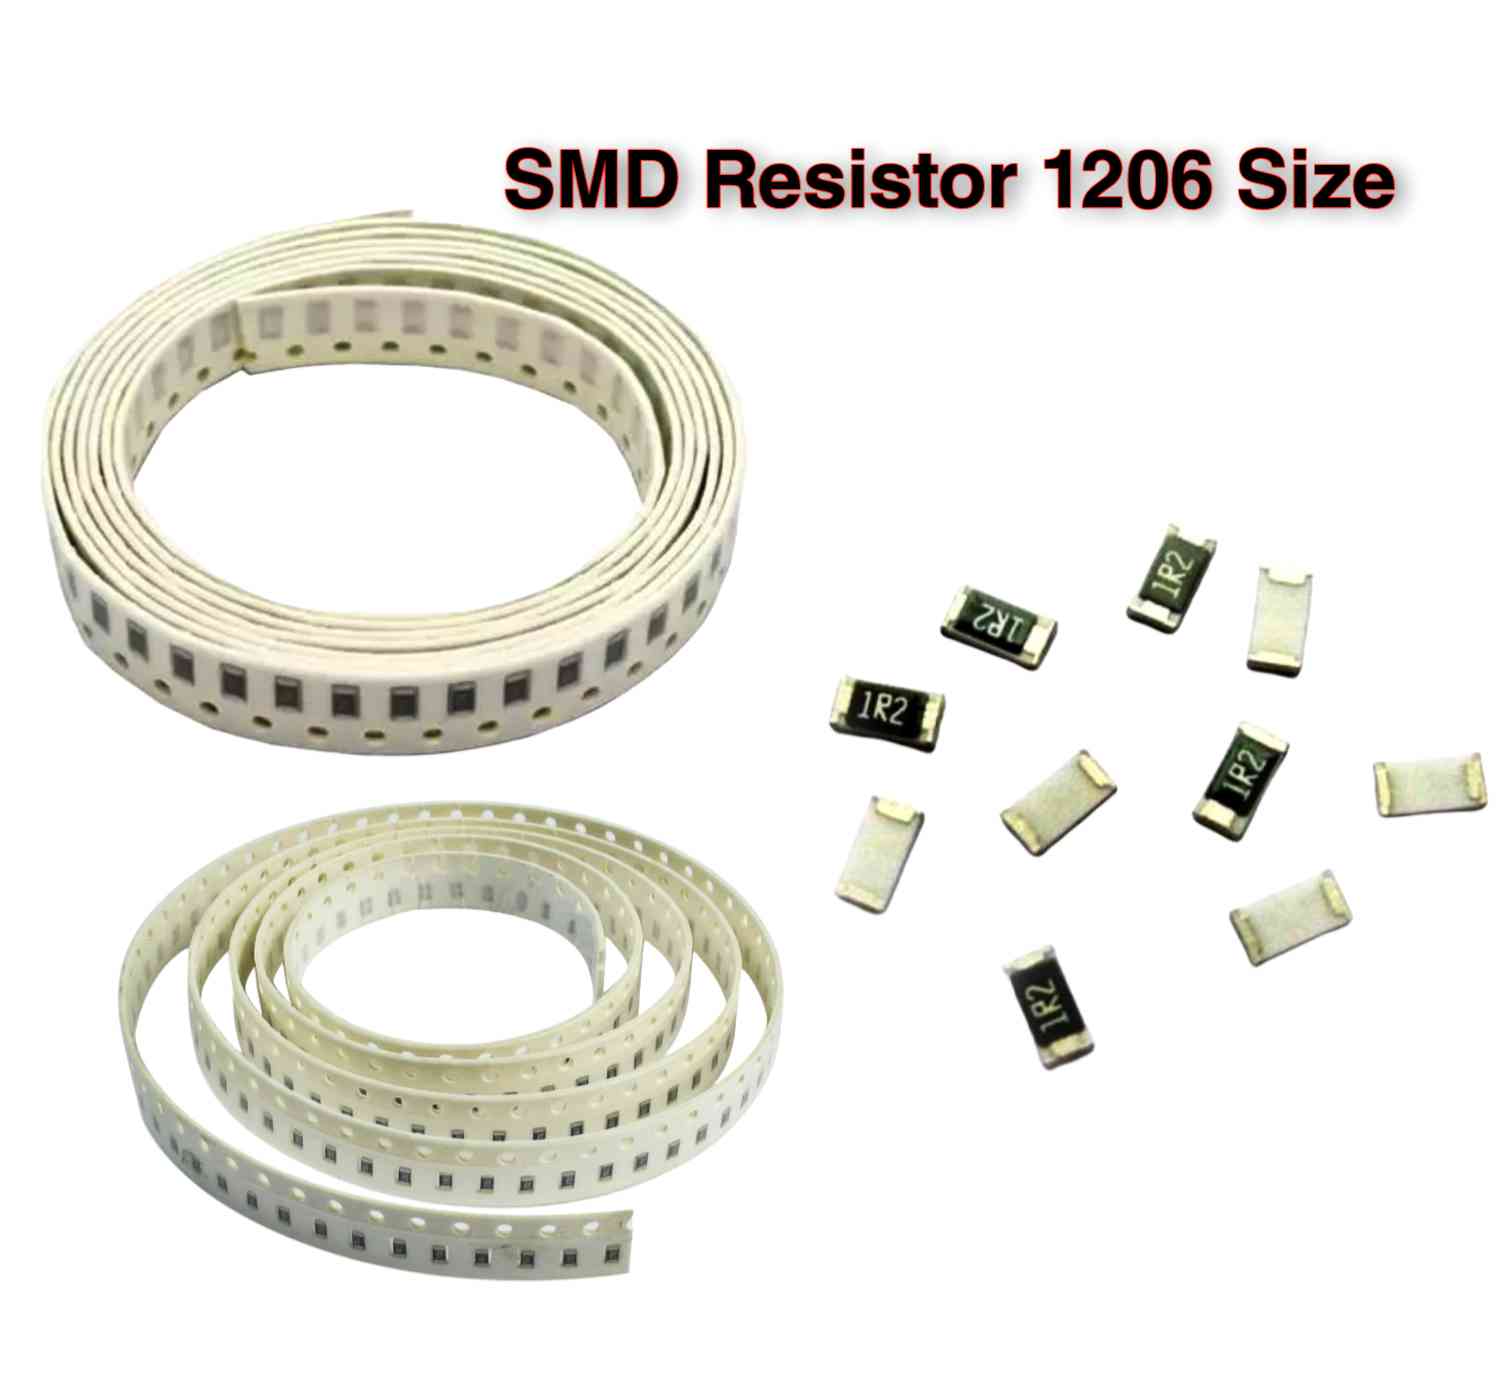 100 Ohm SMD Resistor (101) 0.25W Size 1206 - 100Pcs